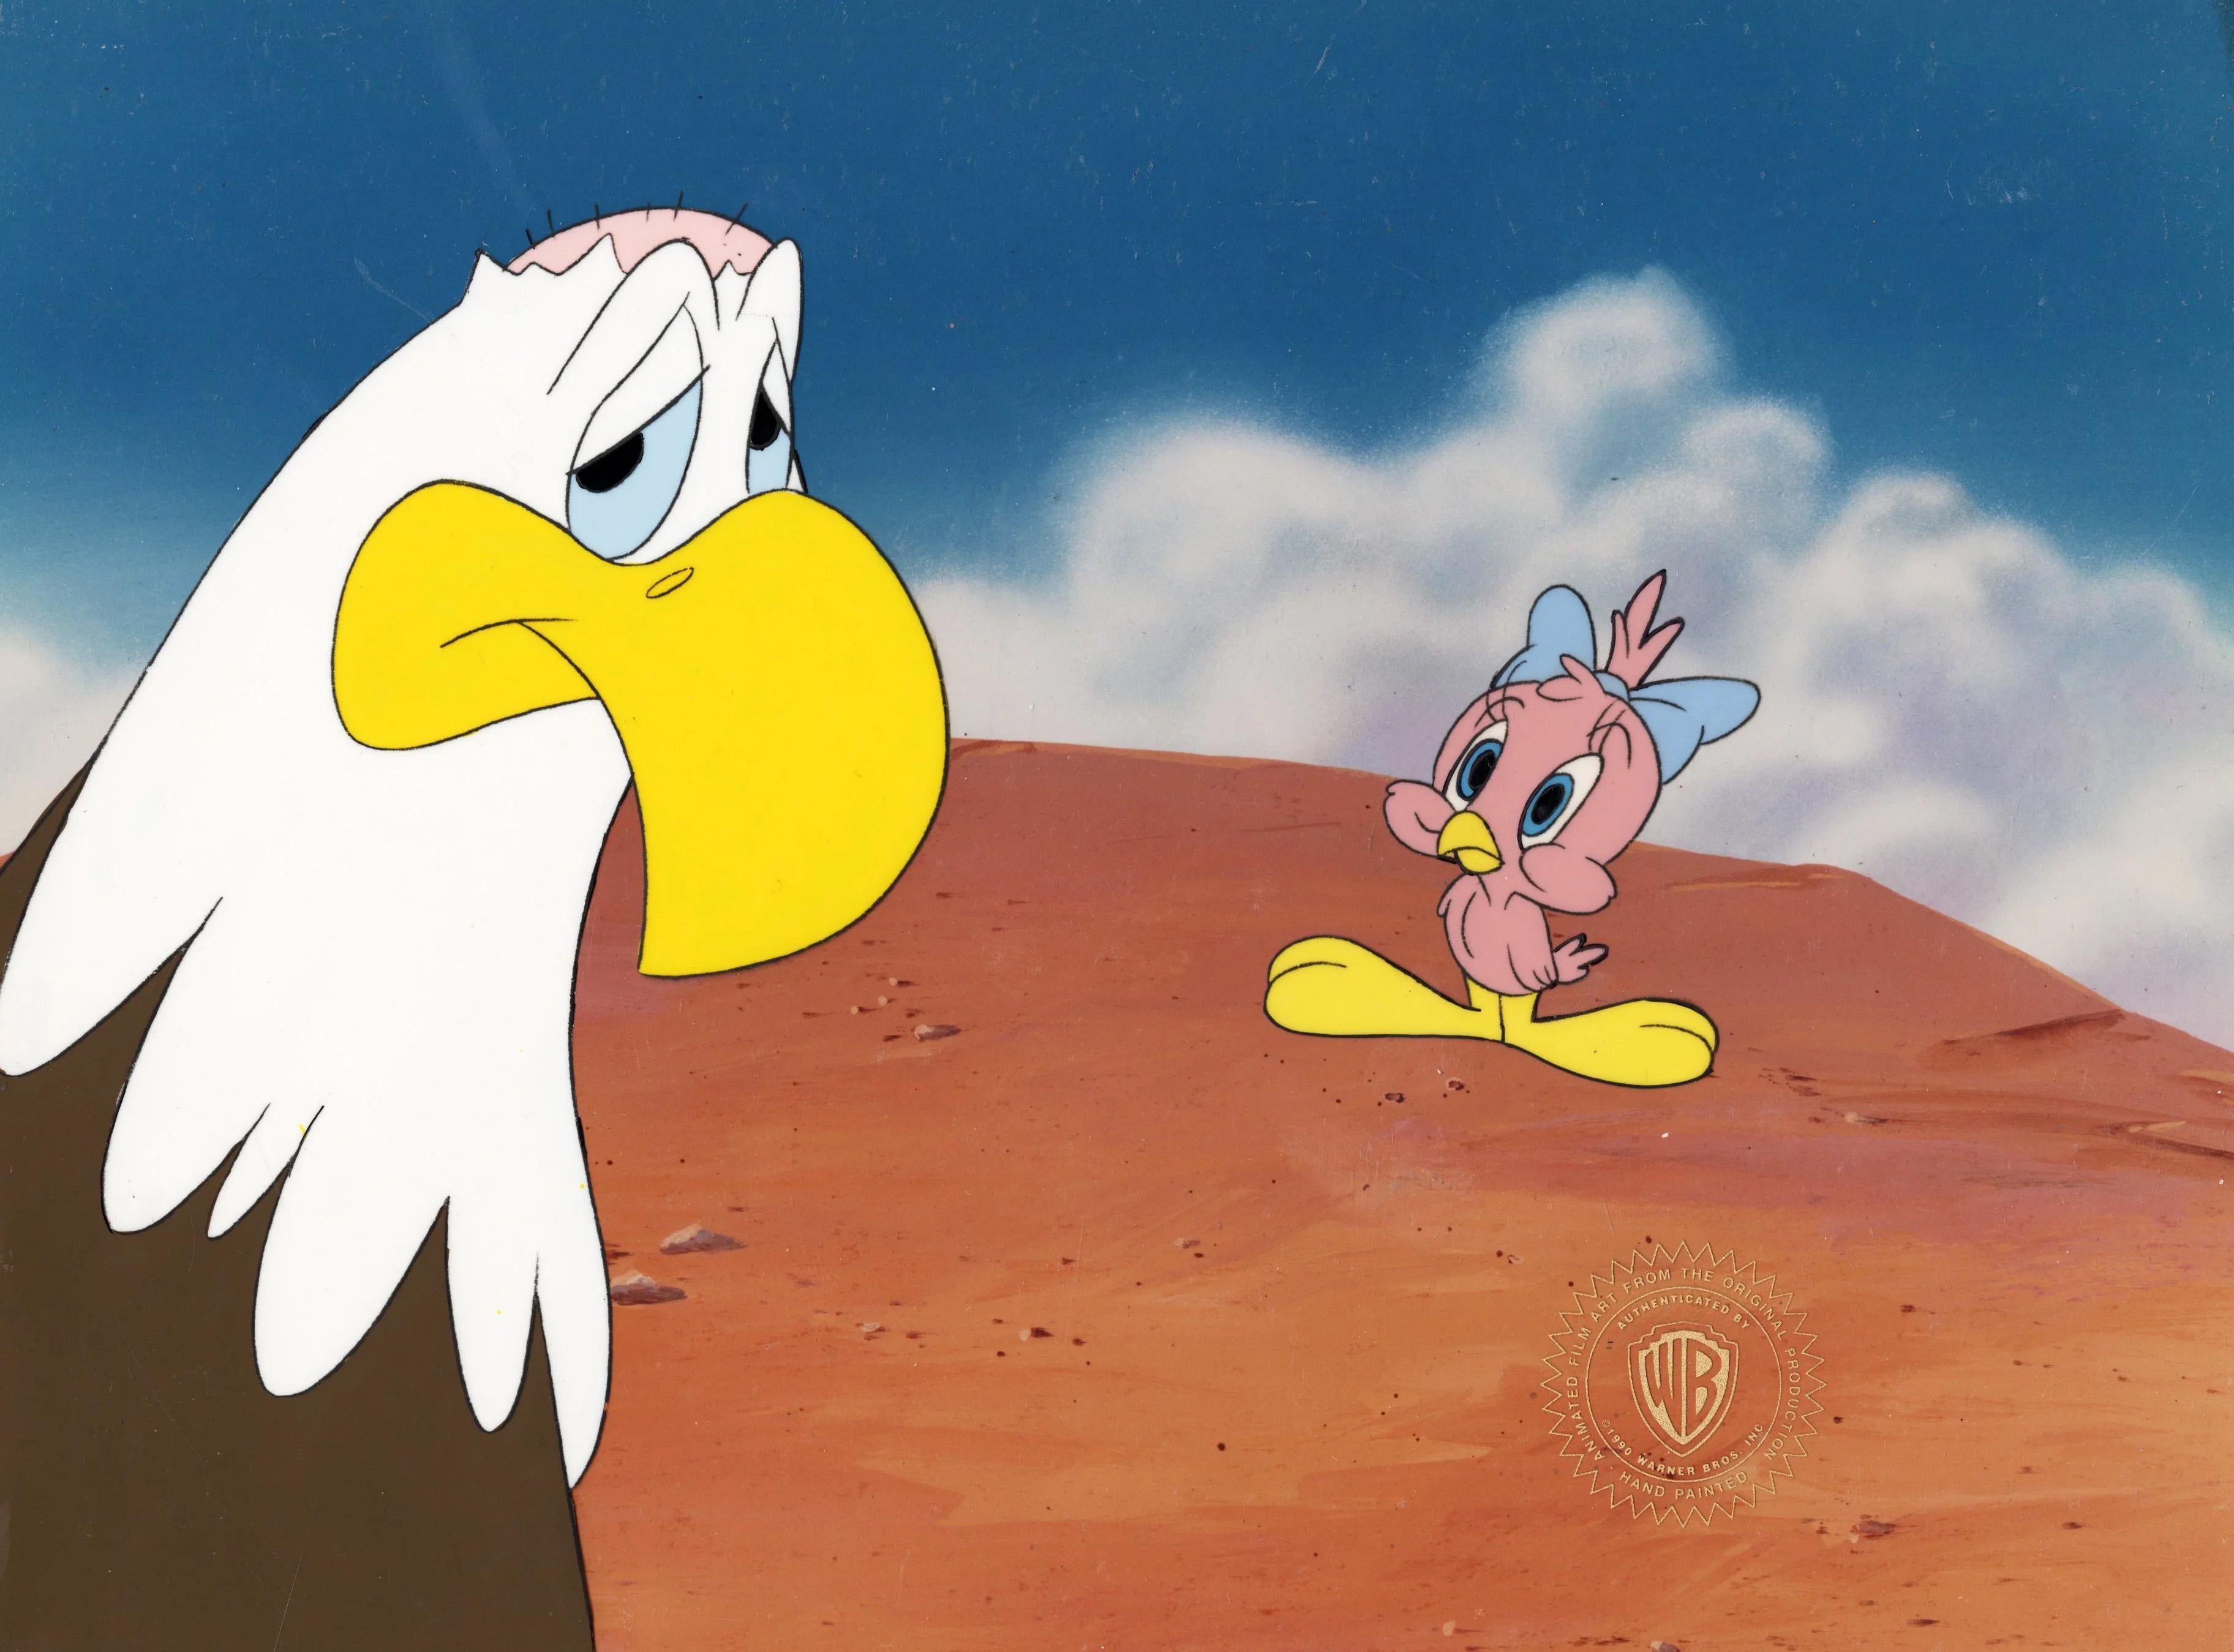 Tiny Toons Original Production Cel: Sweetie Bird - Art by Warner Bros. Studio Artists